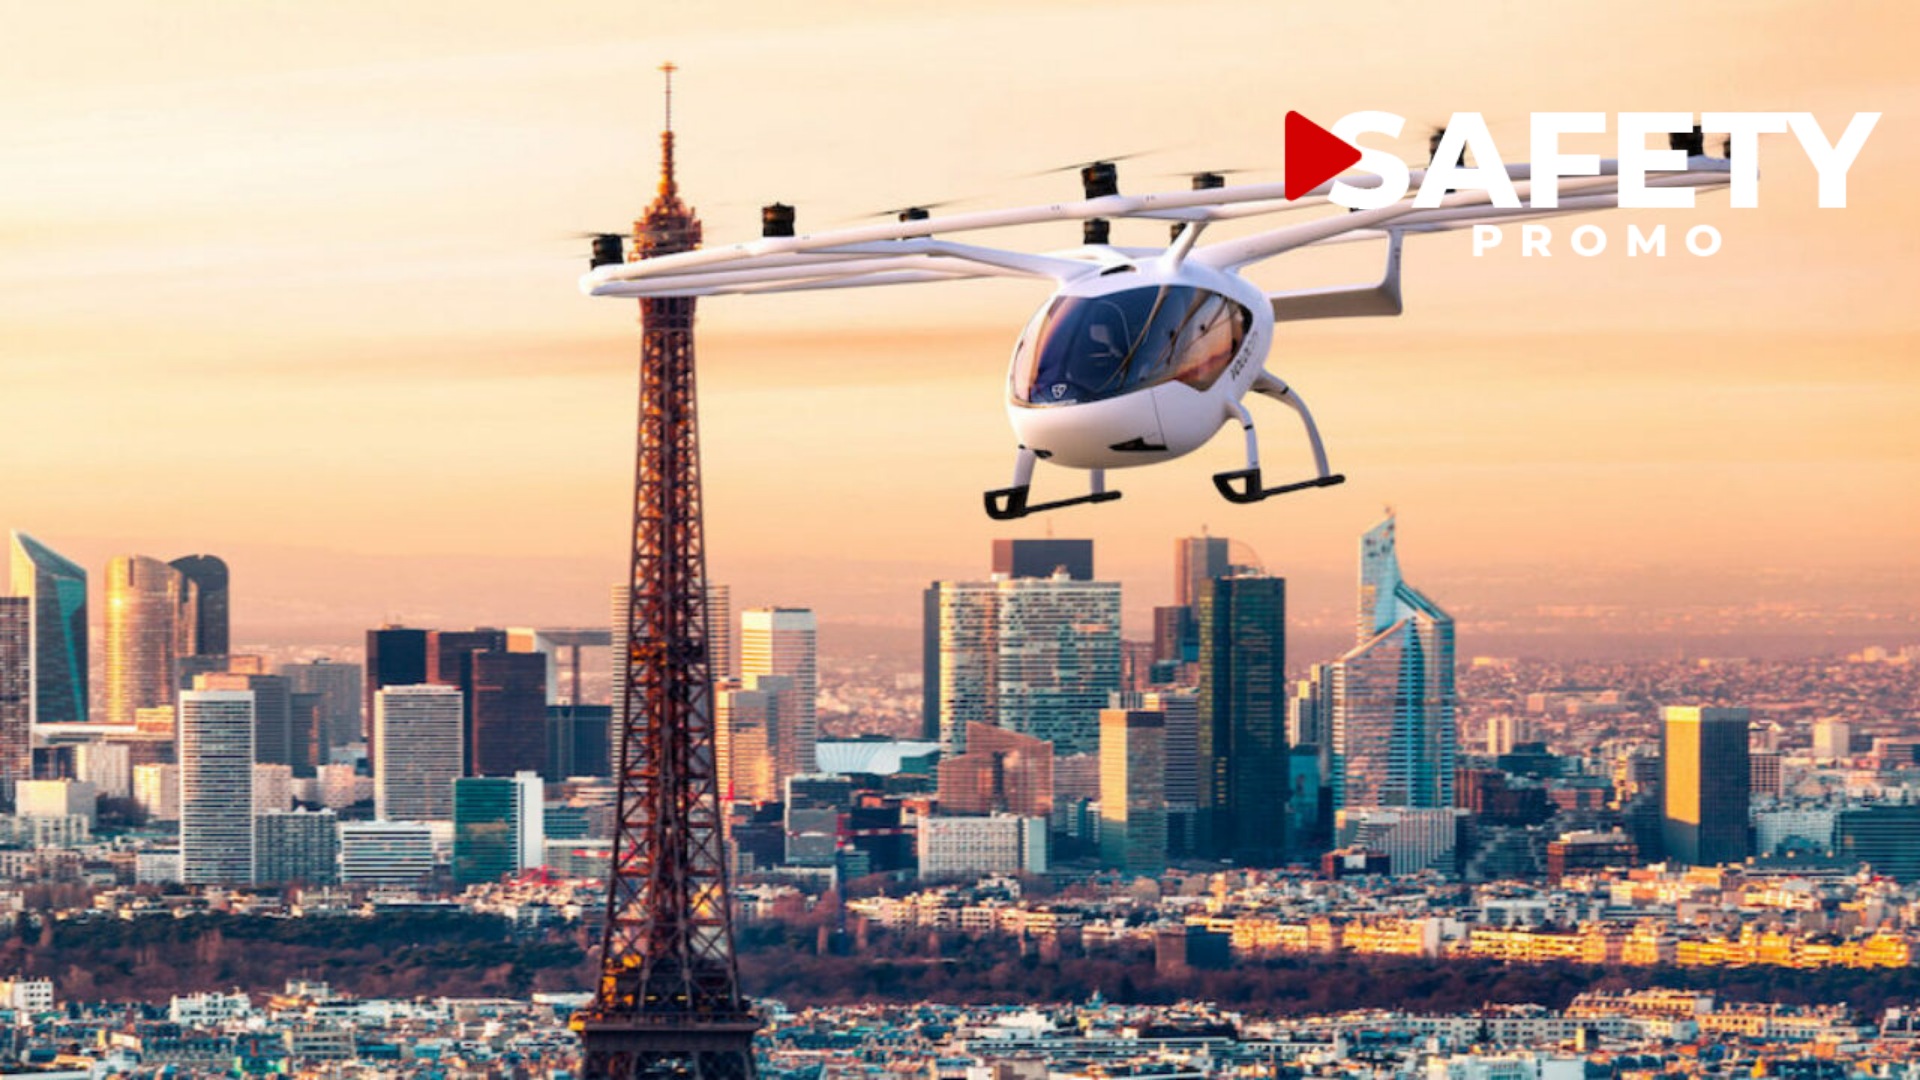 Toutes les informations essentielles sur les taxis volants pour Paris 2024